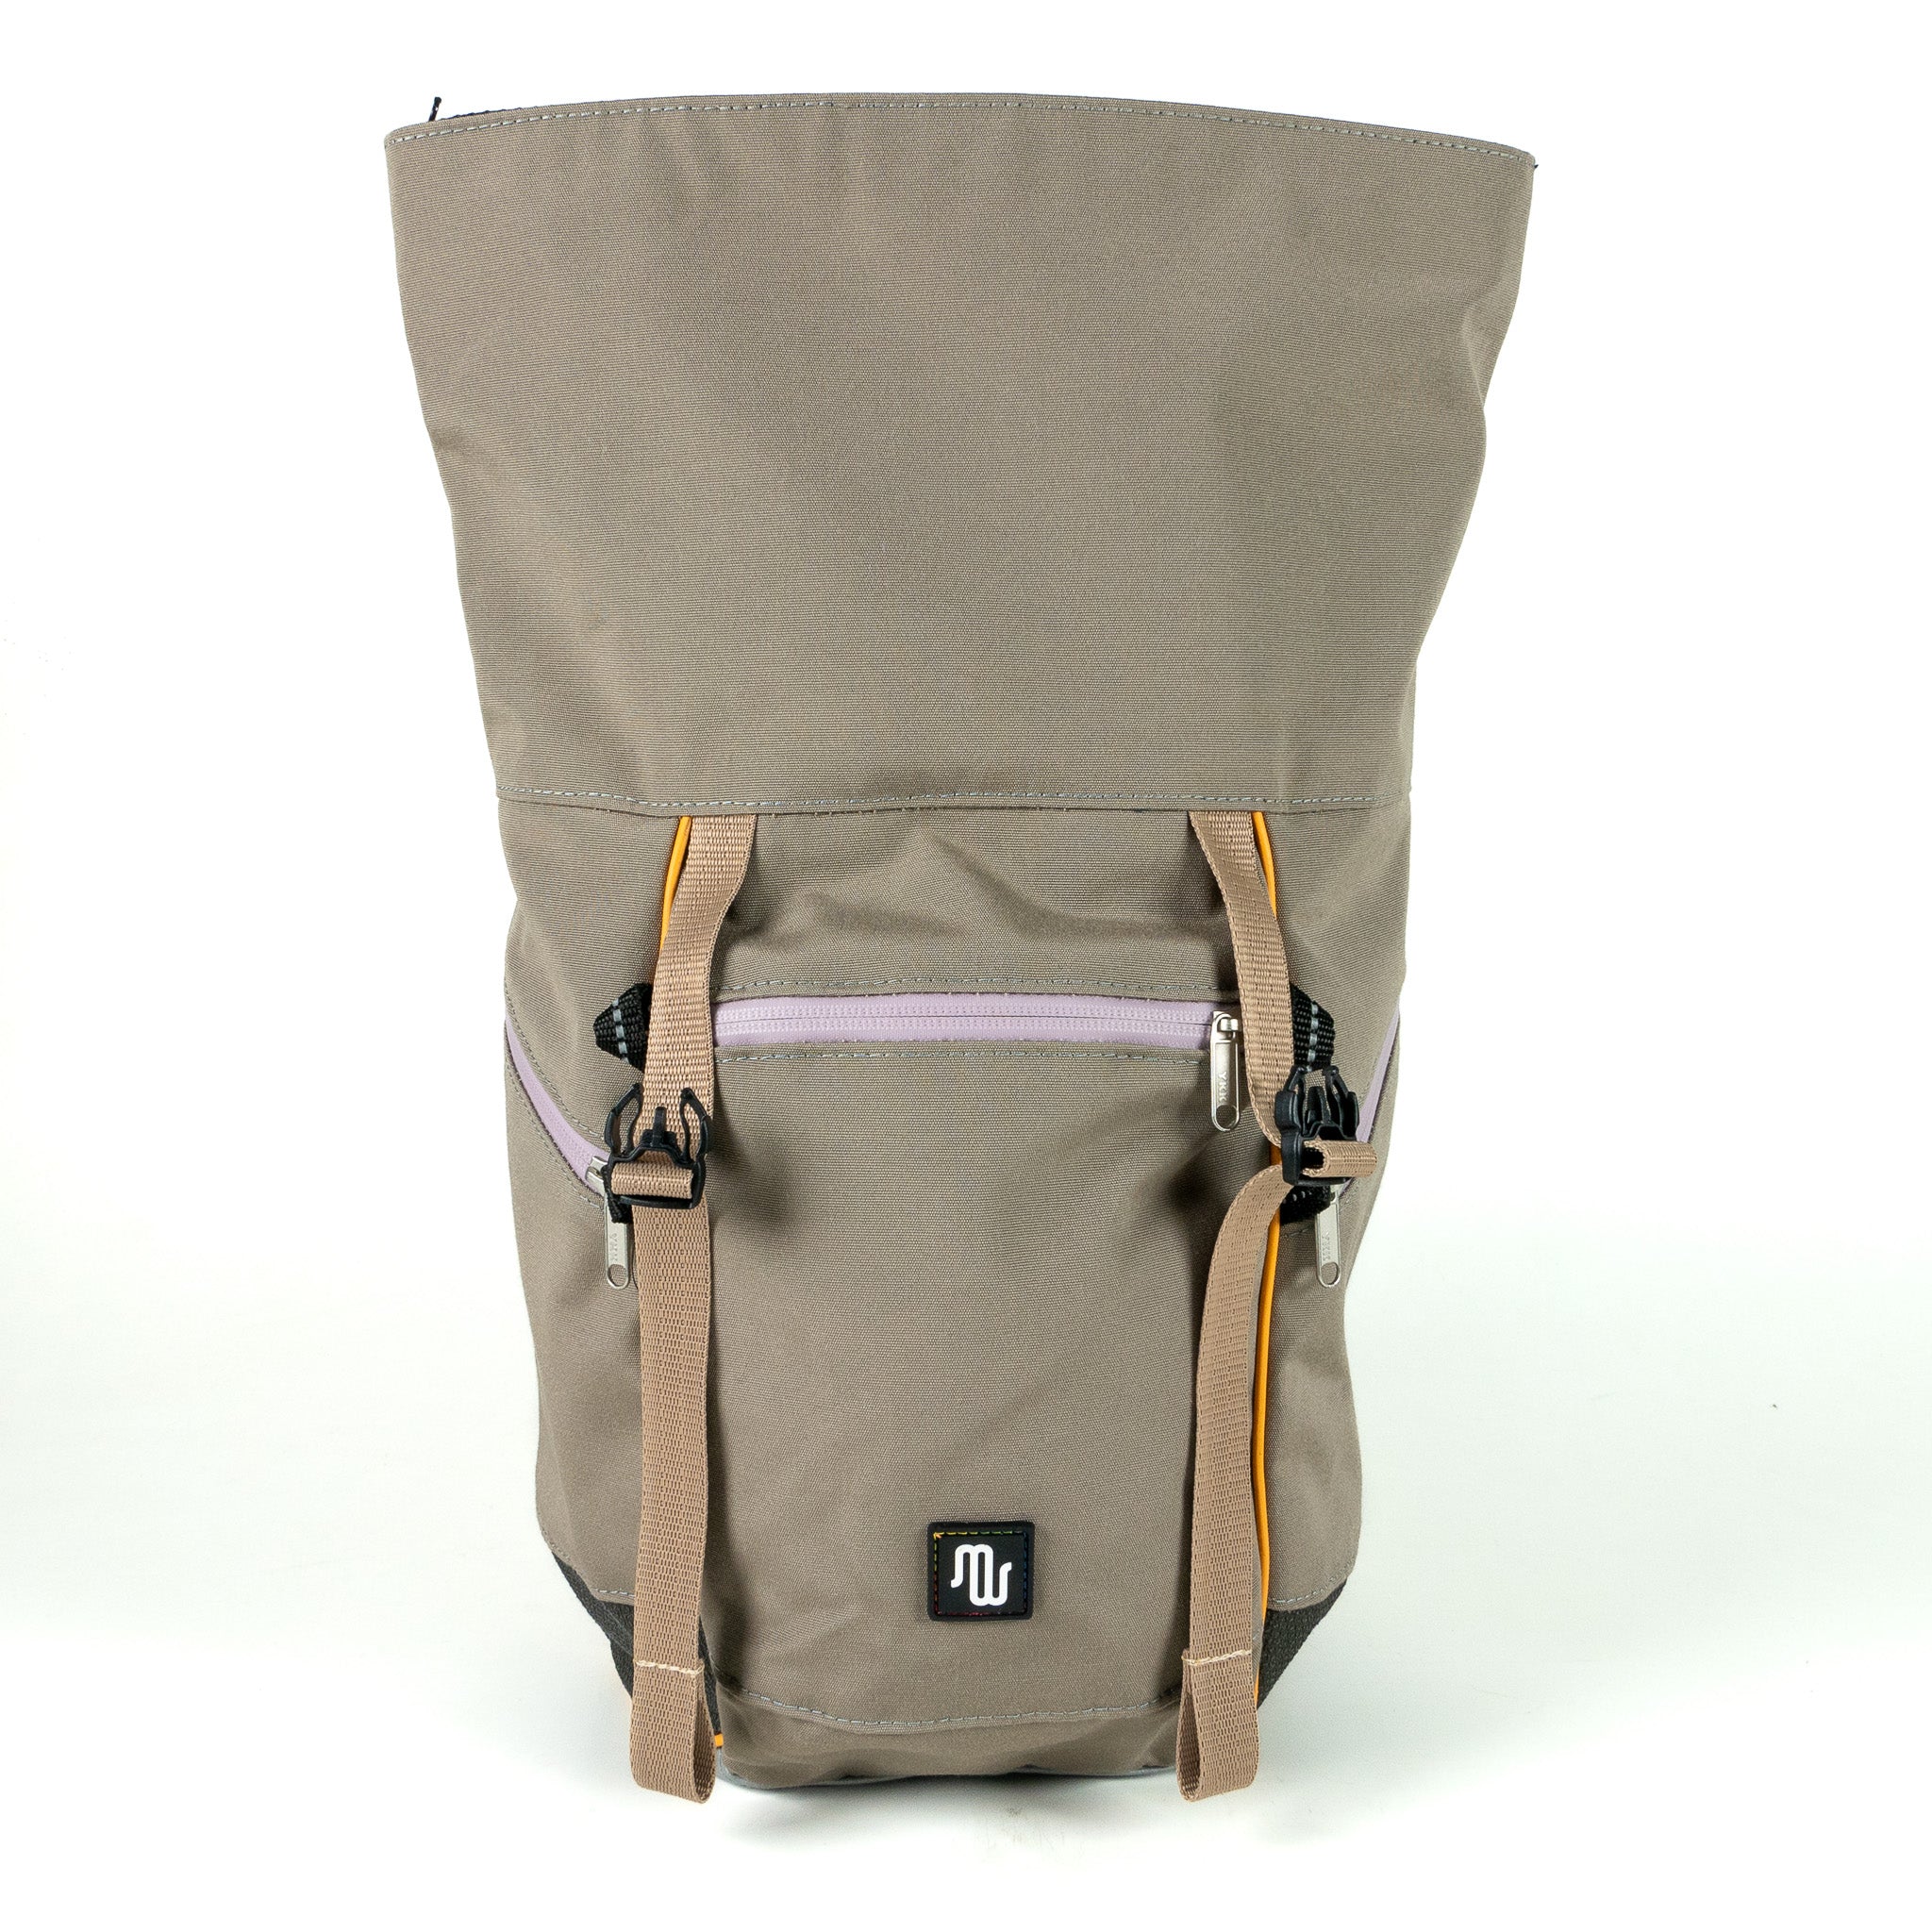 BUDDY No. 123 - Backpacks - medencebag